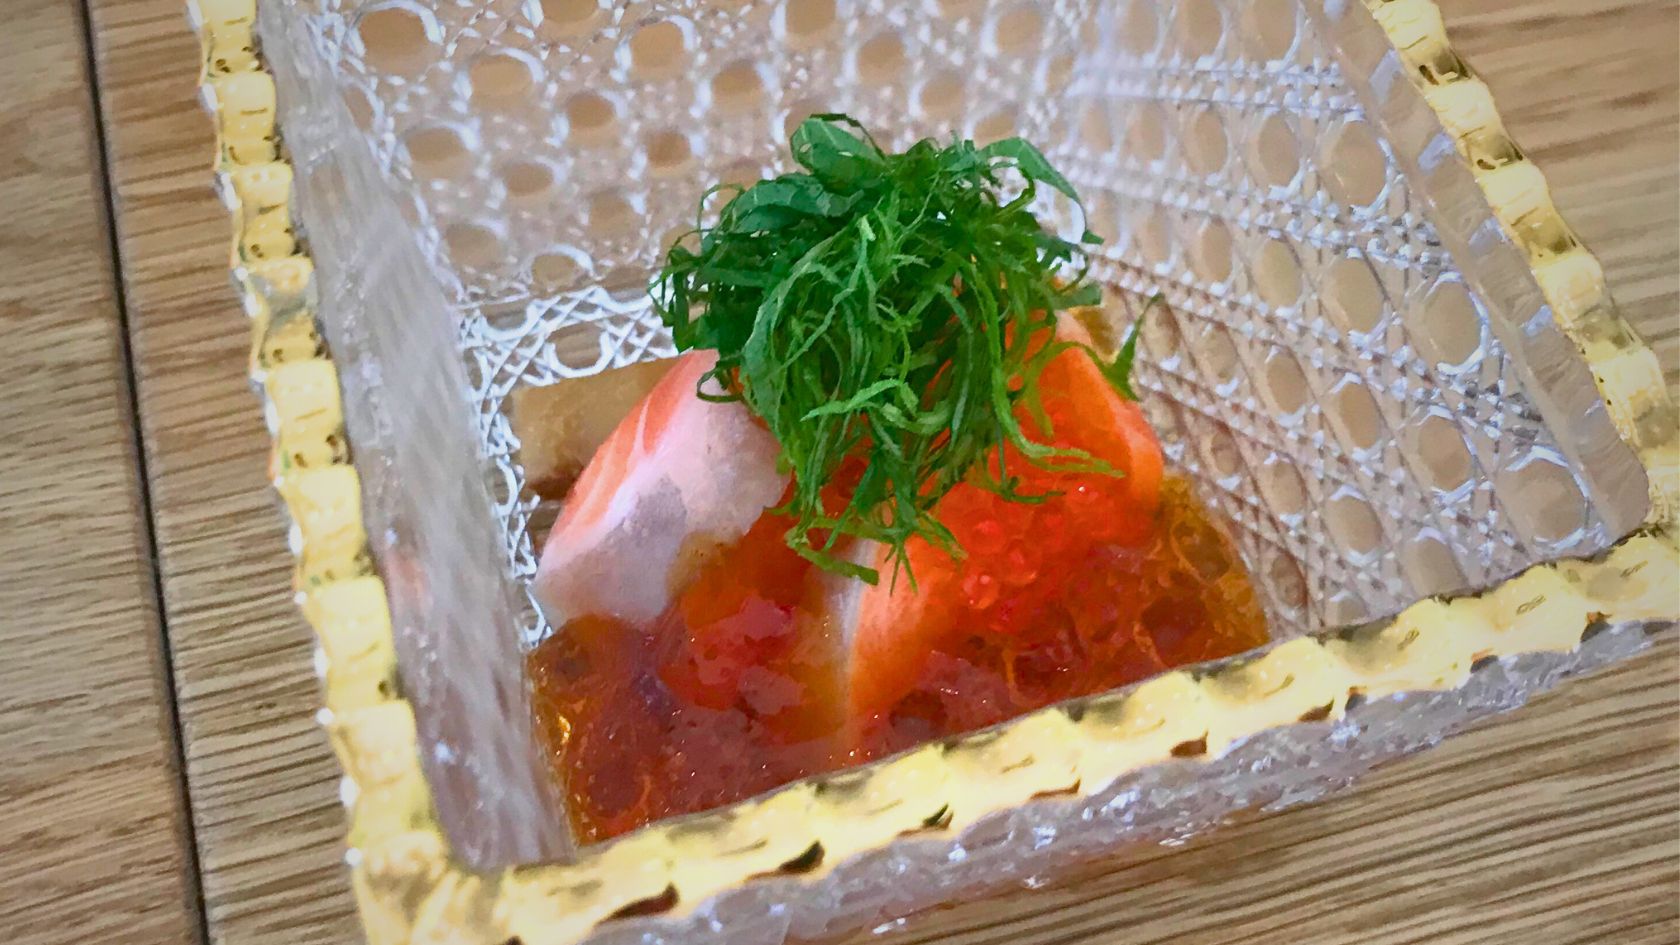 A dish of sashimi at Kadence, a restaurant sushi & sake bar in orlando's audubon park garden district